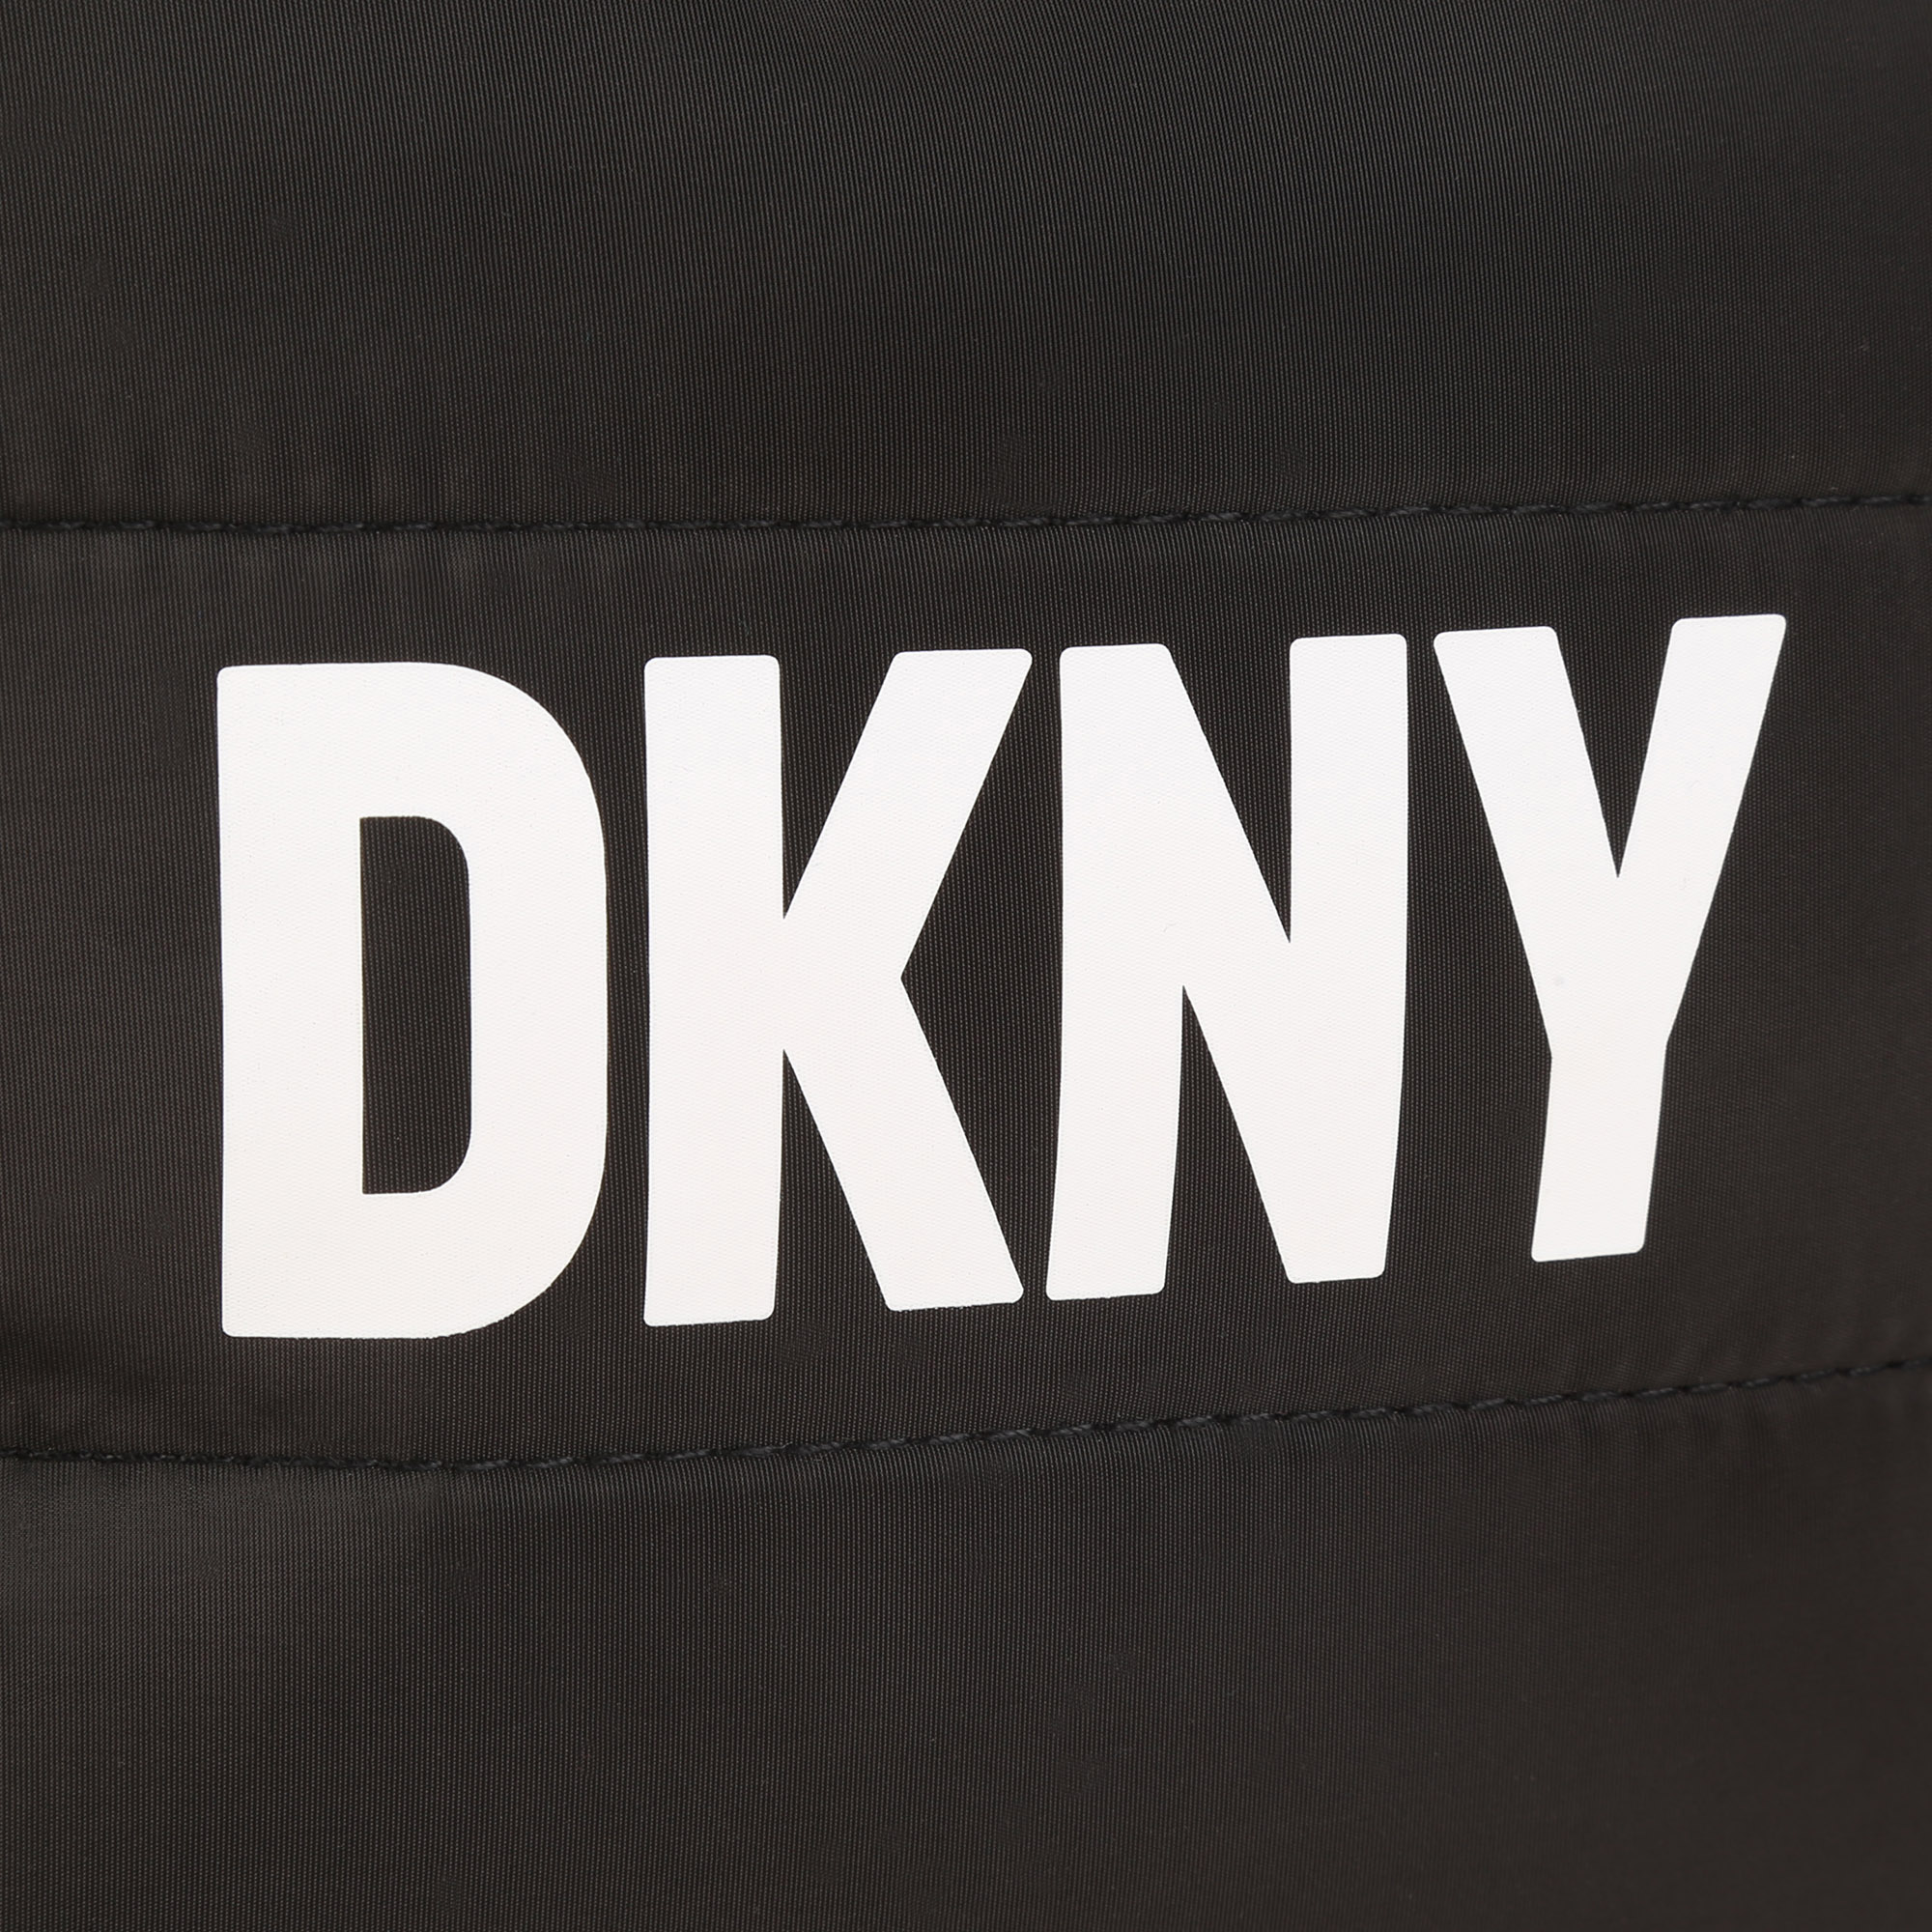 Sac à main zippé réversible DKNY pour FILLE